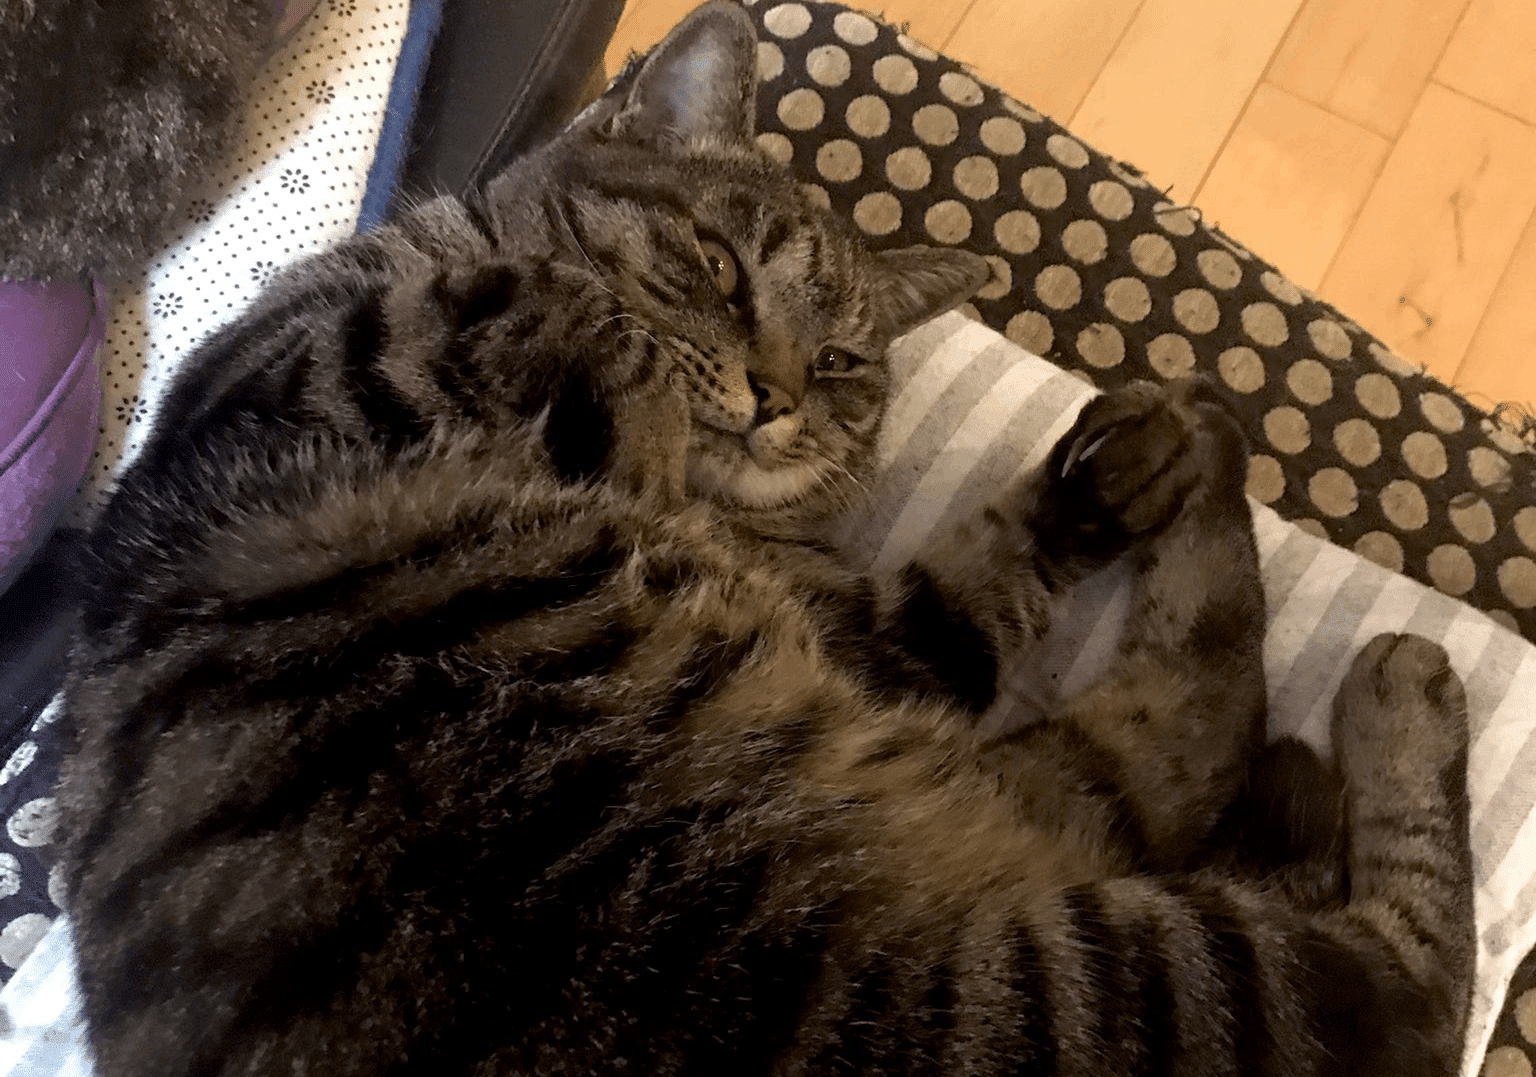 สุดพีค สาวซี่โครงหัก หลังแมวอ้วน 7 กิโลกรัม กระโดดทับตอนนอน | Thaiger ข่าว ไทย